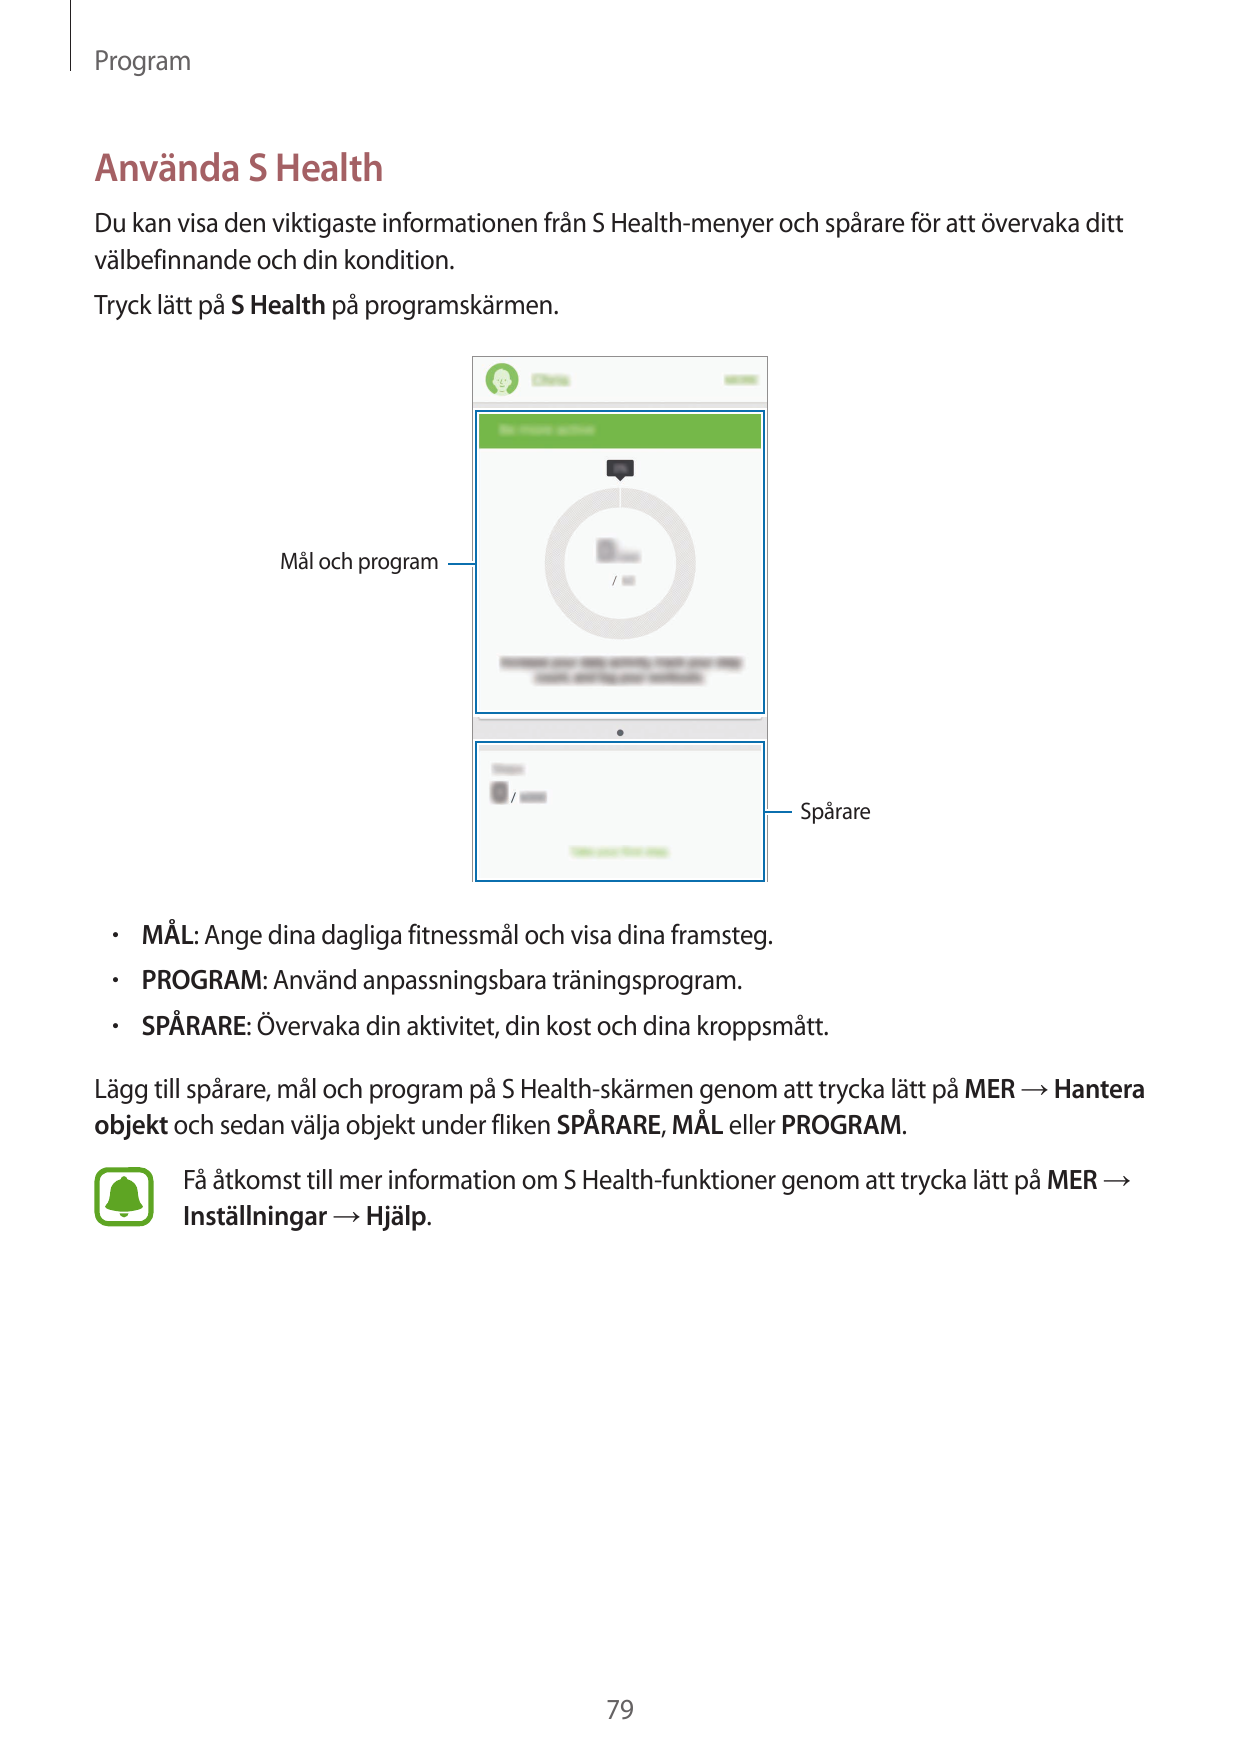 ProgramAnvända S HealthDu kan visa den viktigaste informationen från S Health-menyer och spårare för att övervaka dittvälbefinna